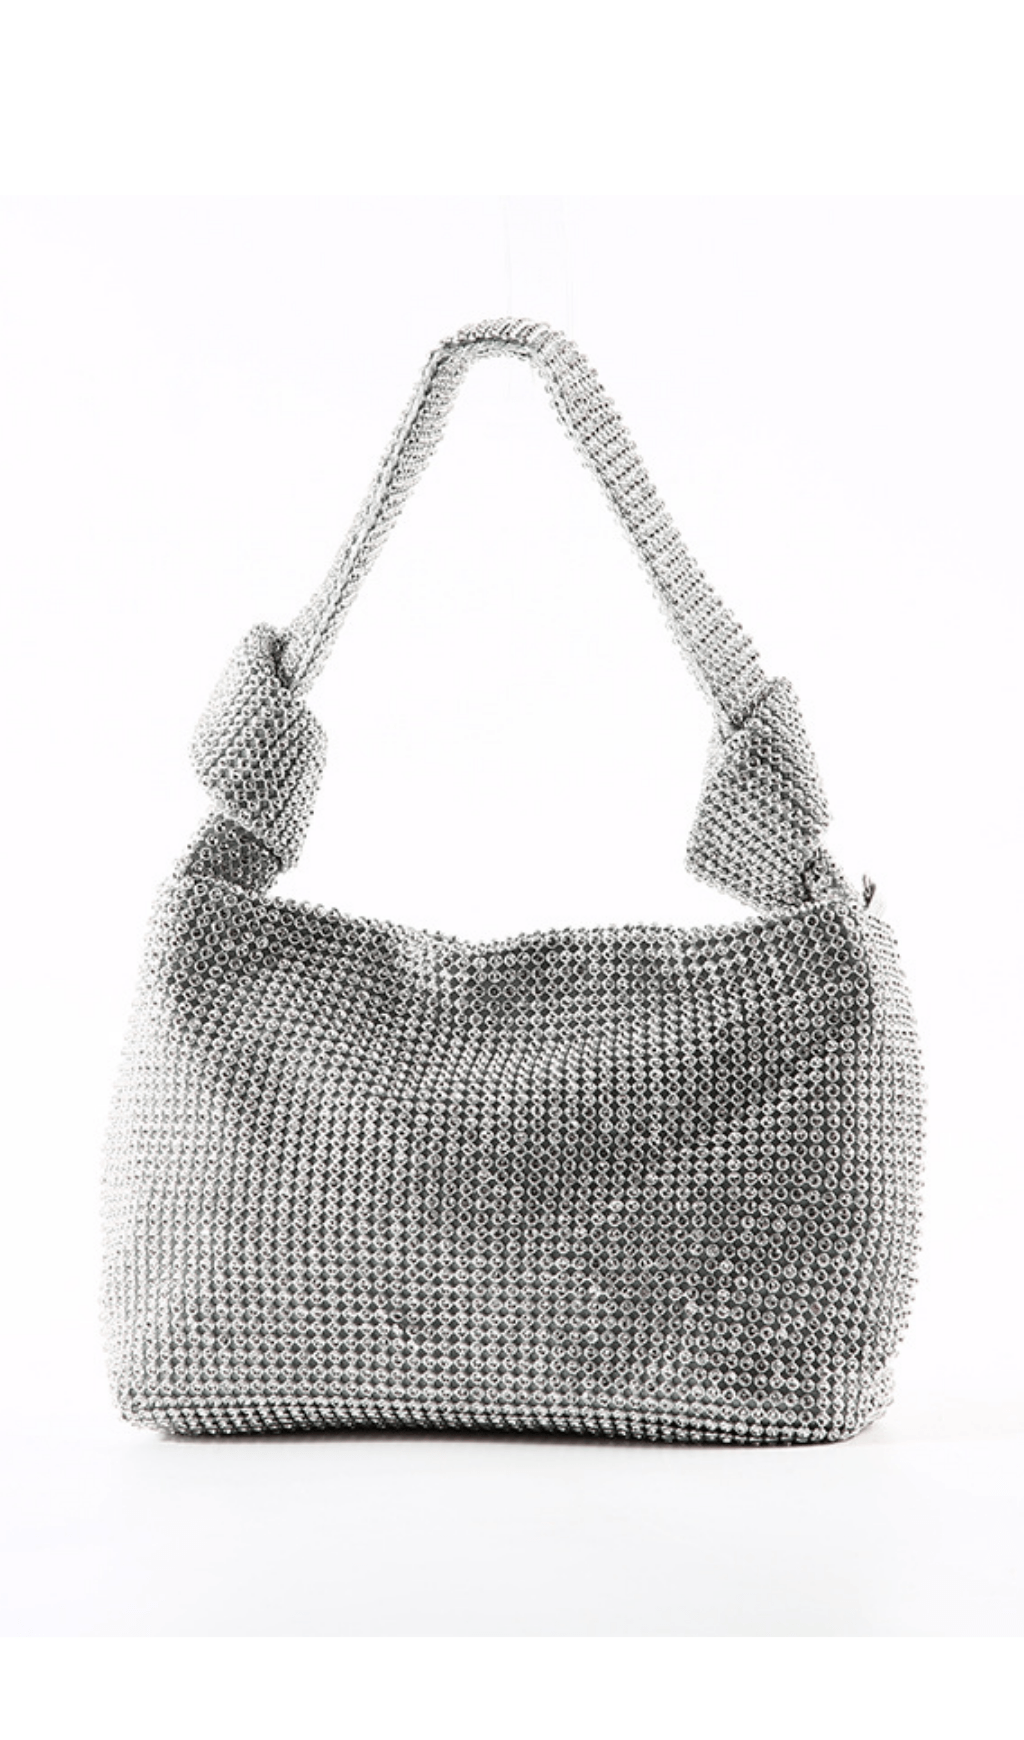 Crystal Handbag - Black